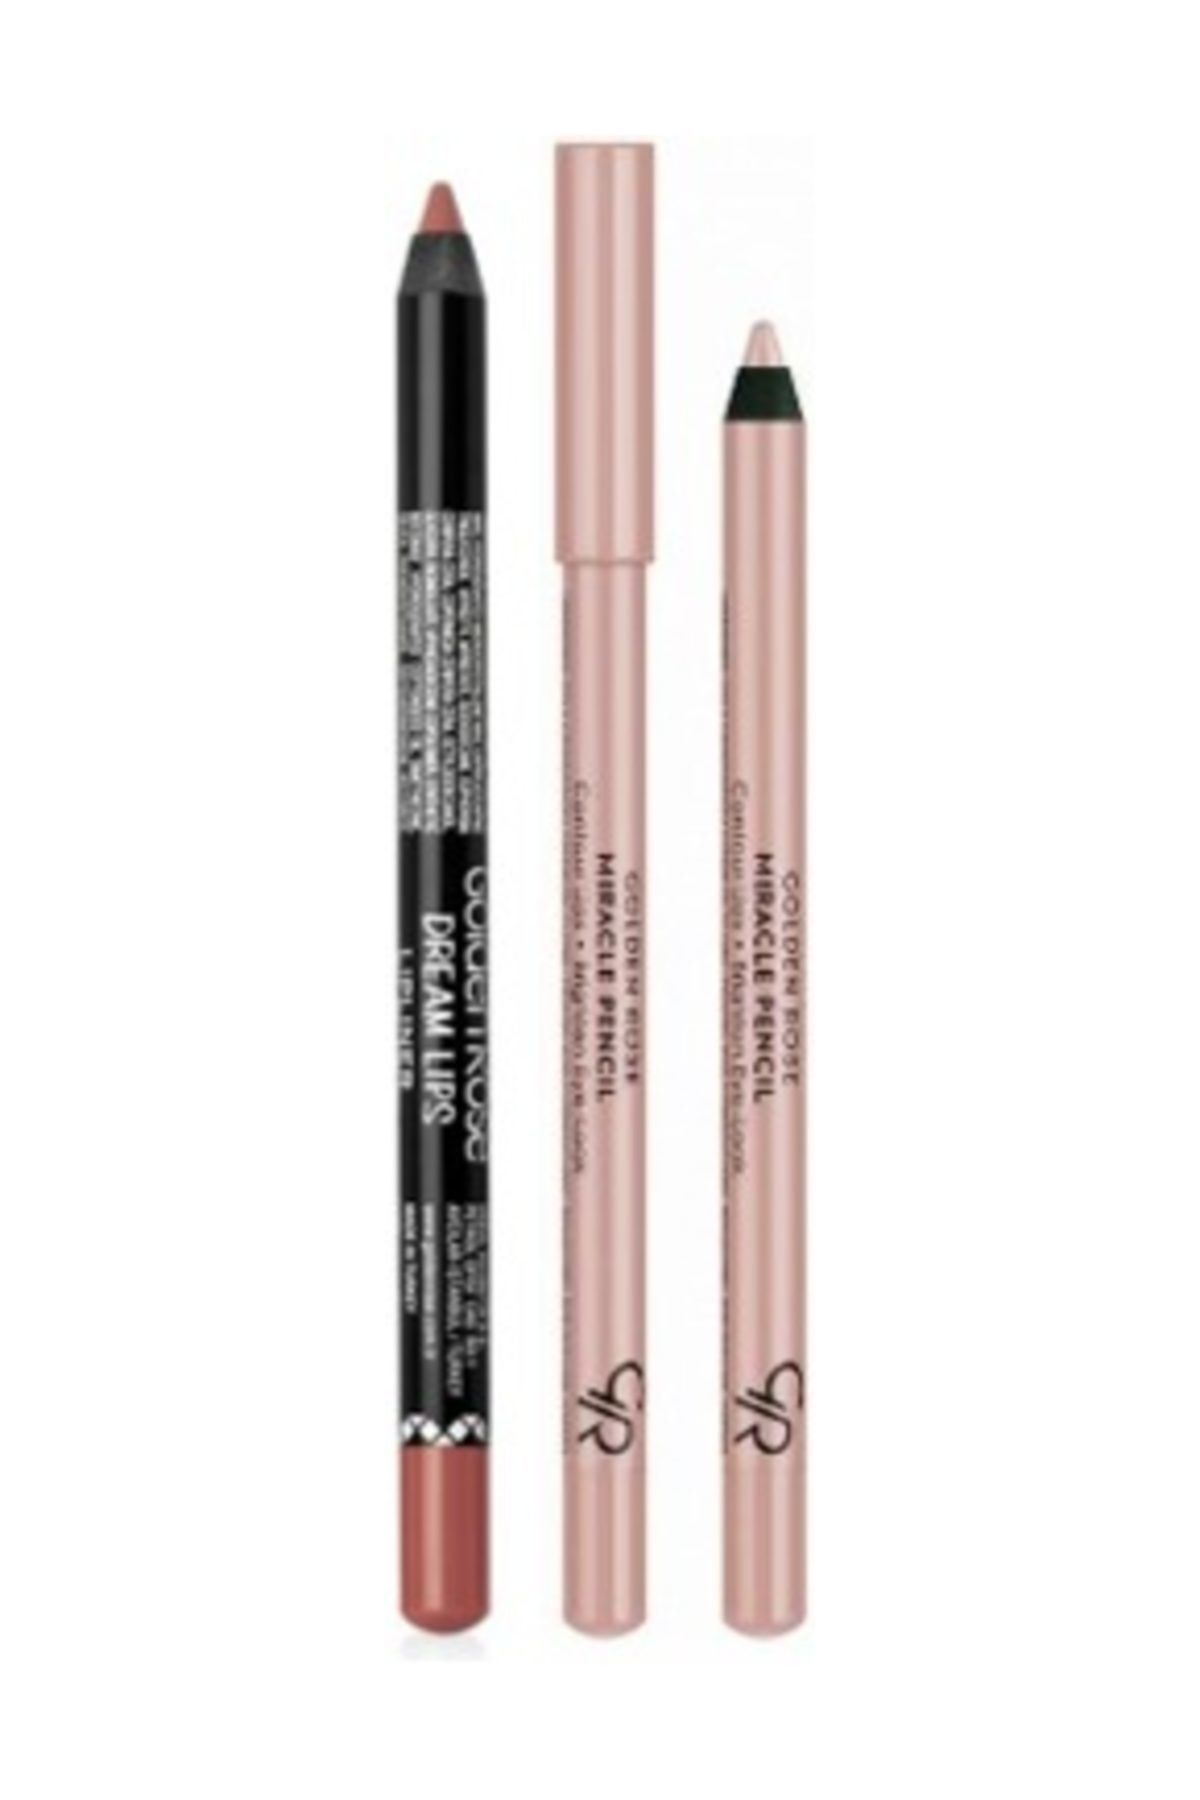 Golden Rose Göz Ve Dudak Için Aydınlatıcı Kalem - Miracle Pencil + Dream Lips Dudak Kalemi 503